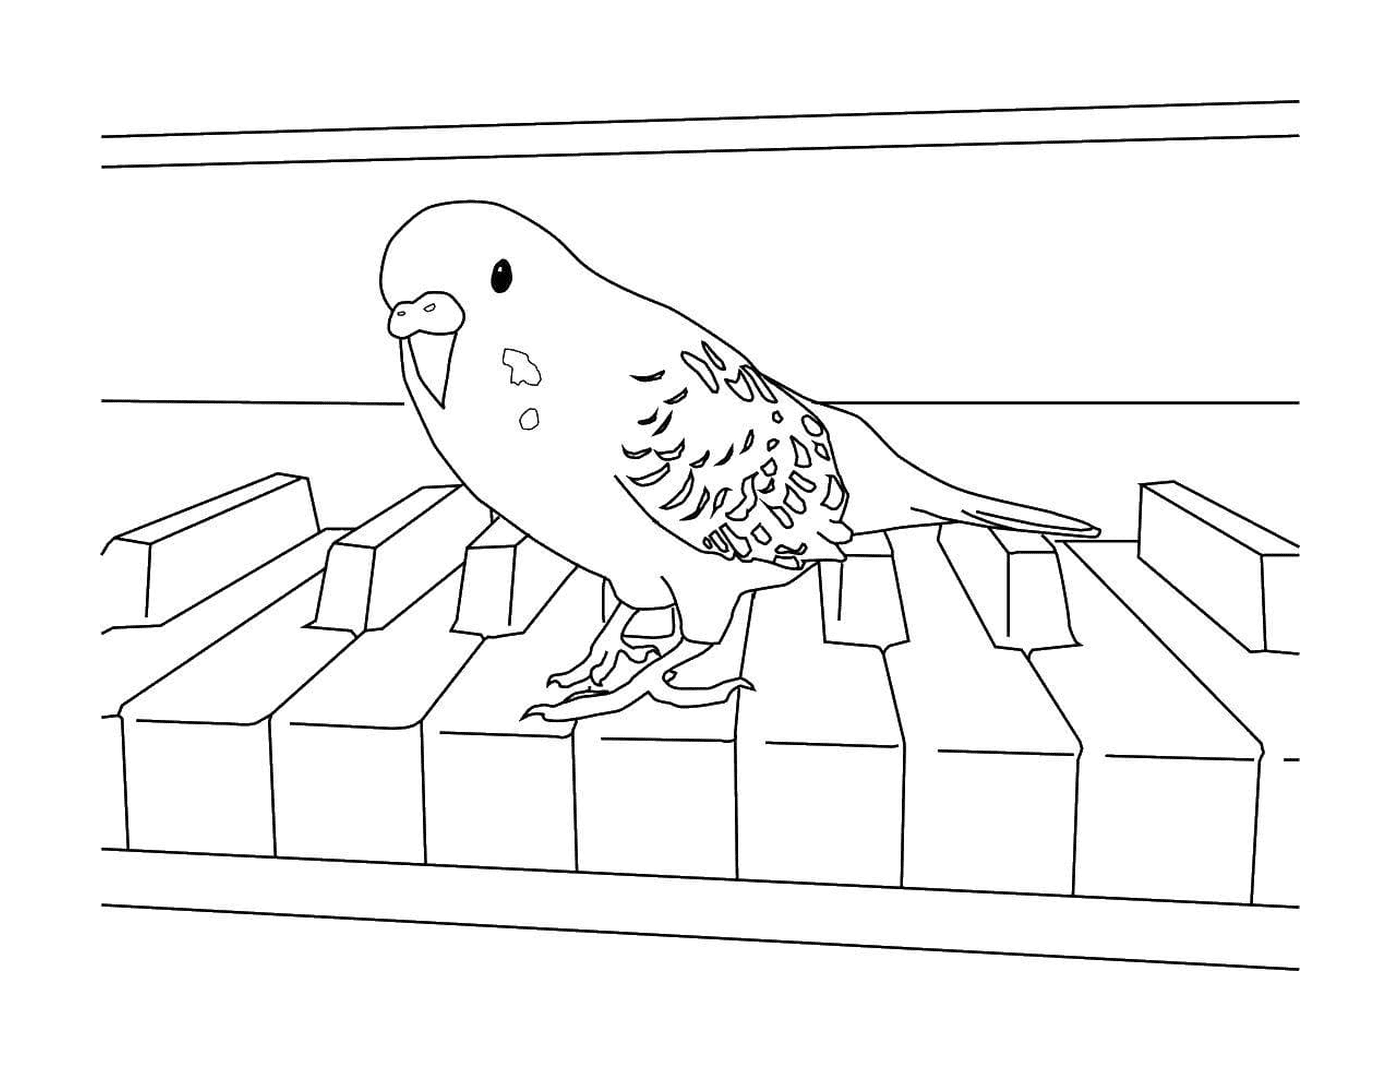  Perrot arroccato sul pianoforte 